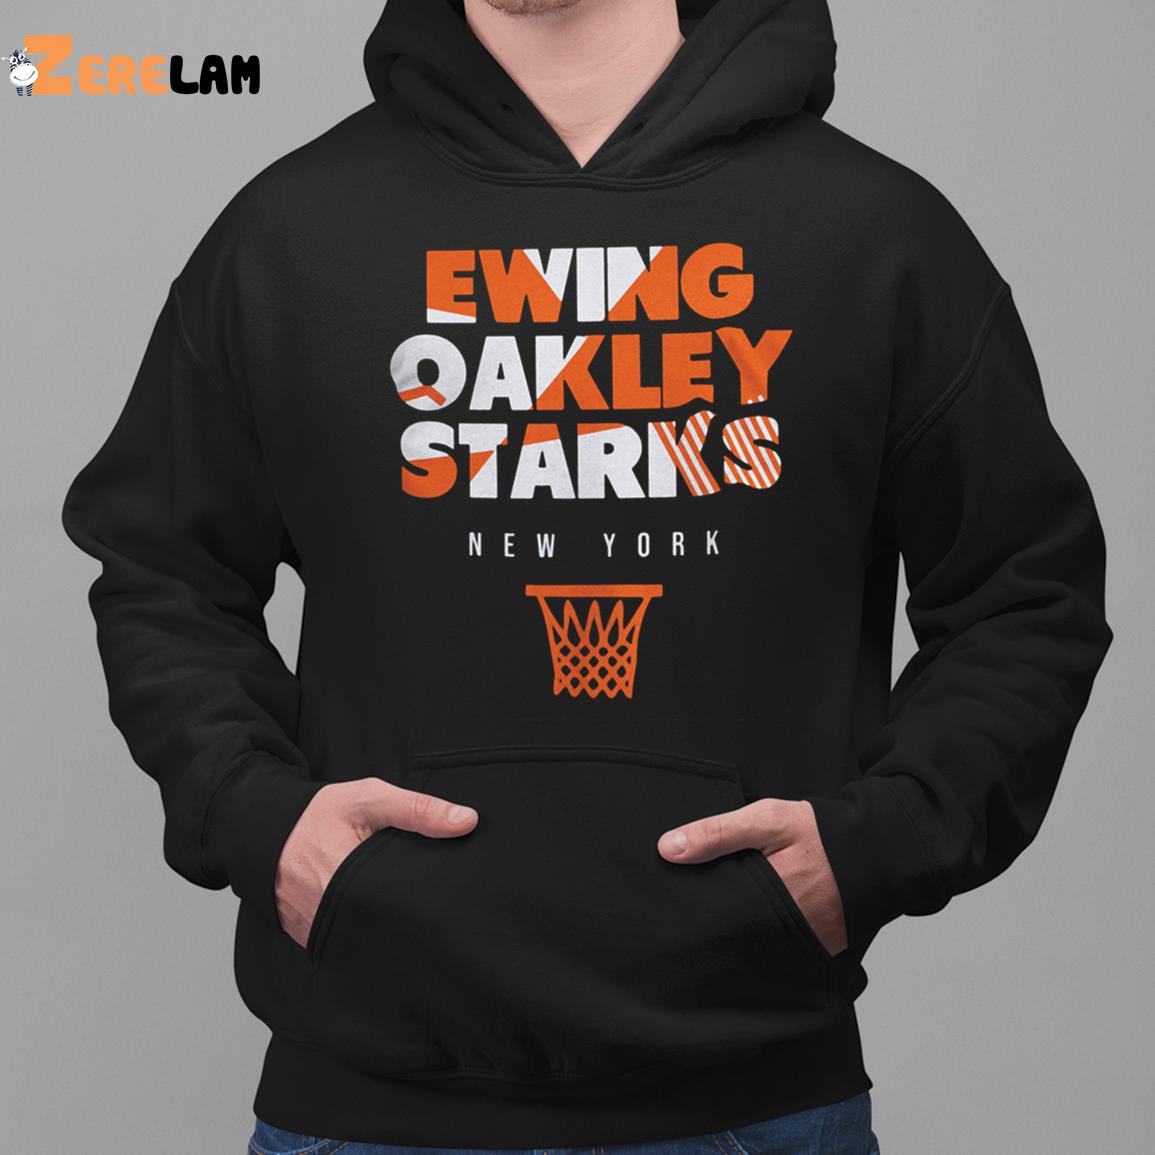 Ewing Oakley Starks New York Shirt - Zerelam